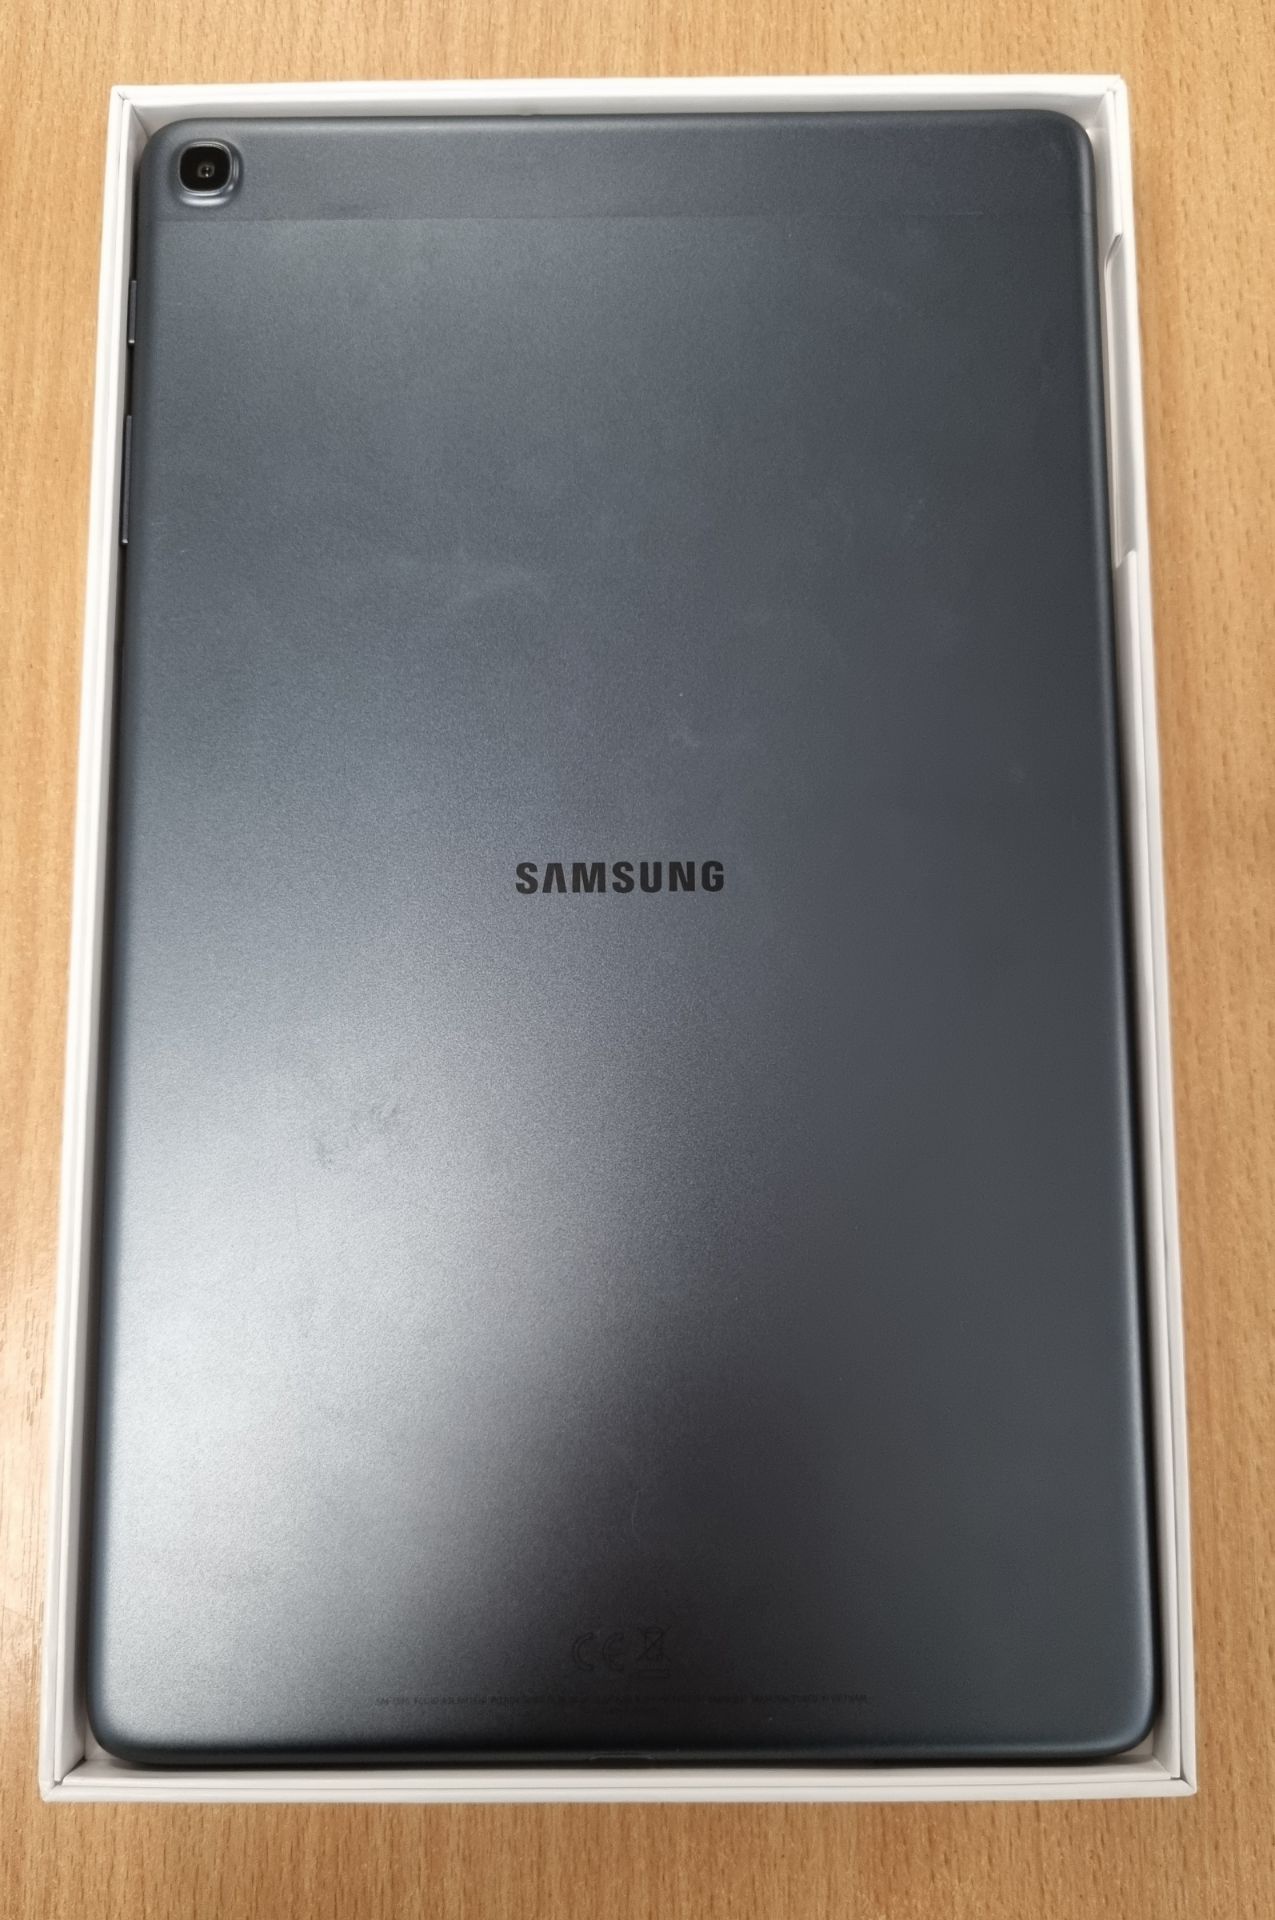 Samsung Galaxy Tab A SM-T510 - 10.1 inch tablet - Wifi - 32GB - 2GB RAM - 8MP AF & 5MP - Black - Image 3 of 6